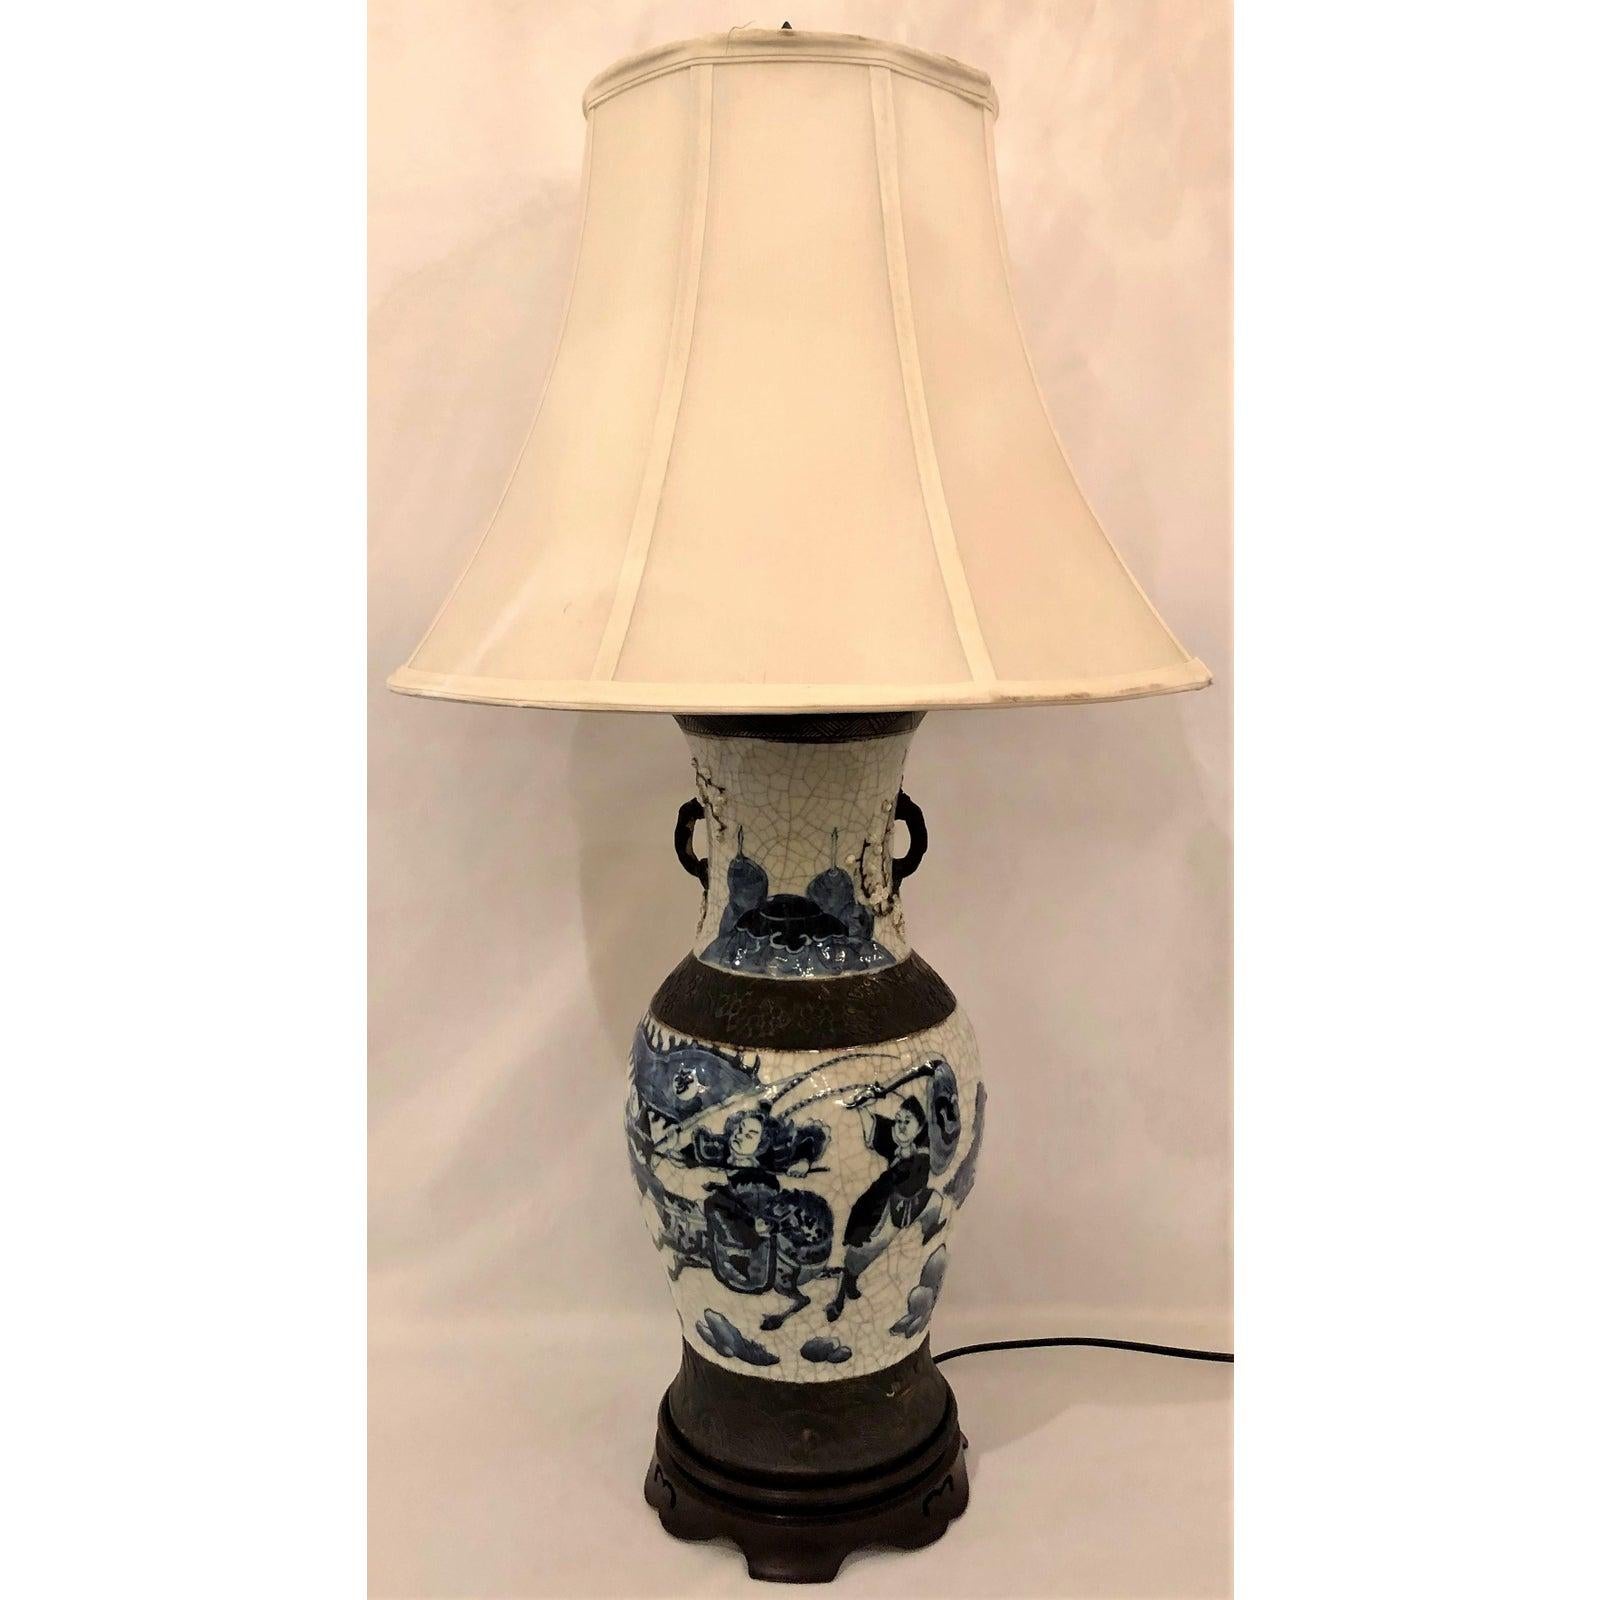 Pour les amateurs de lampes bleues et blanches, voici une belle lampe qui repose sur un socle en acajou sculpté.
 